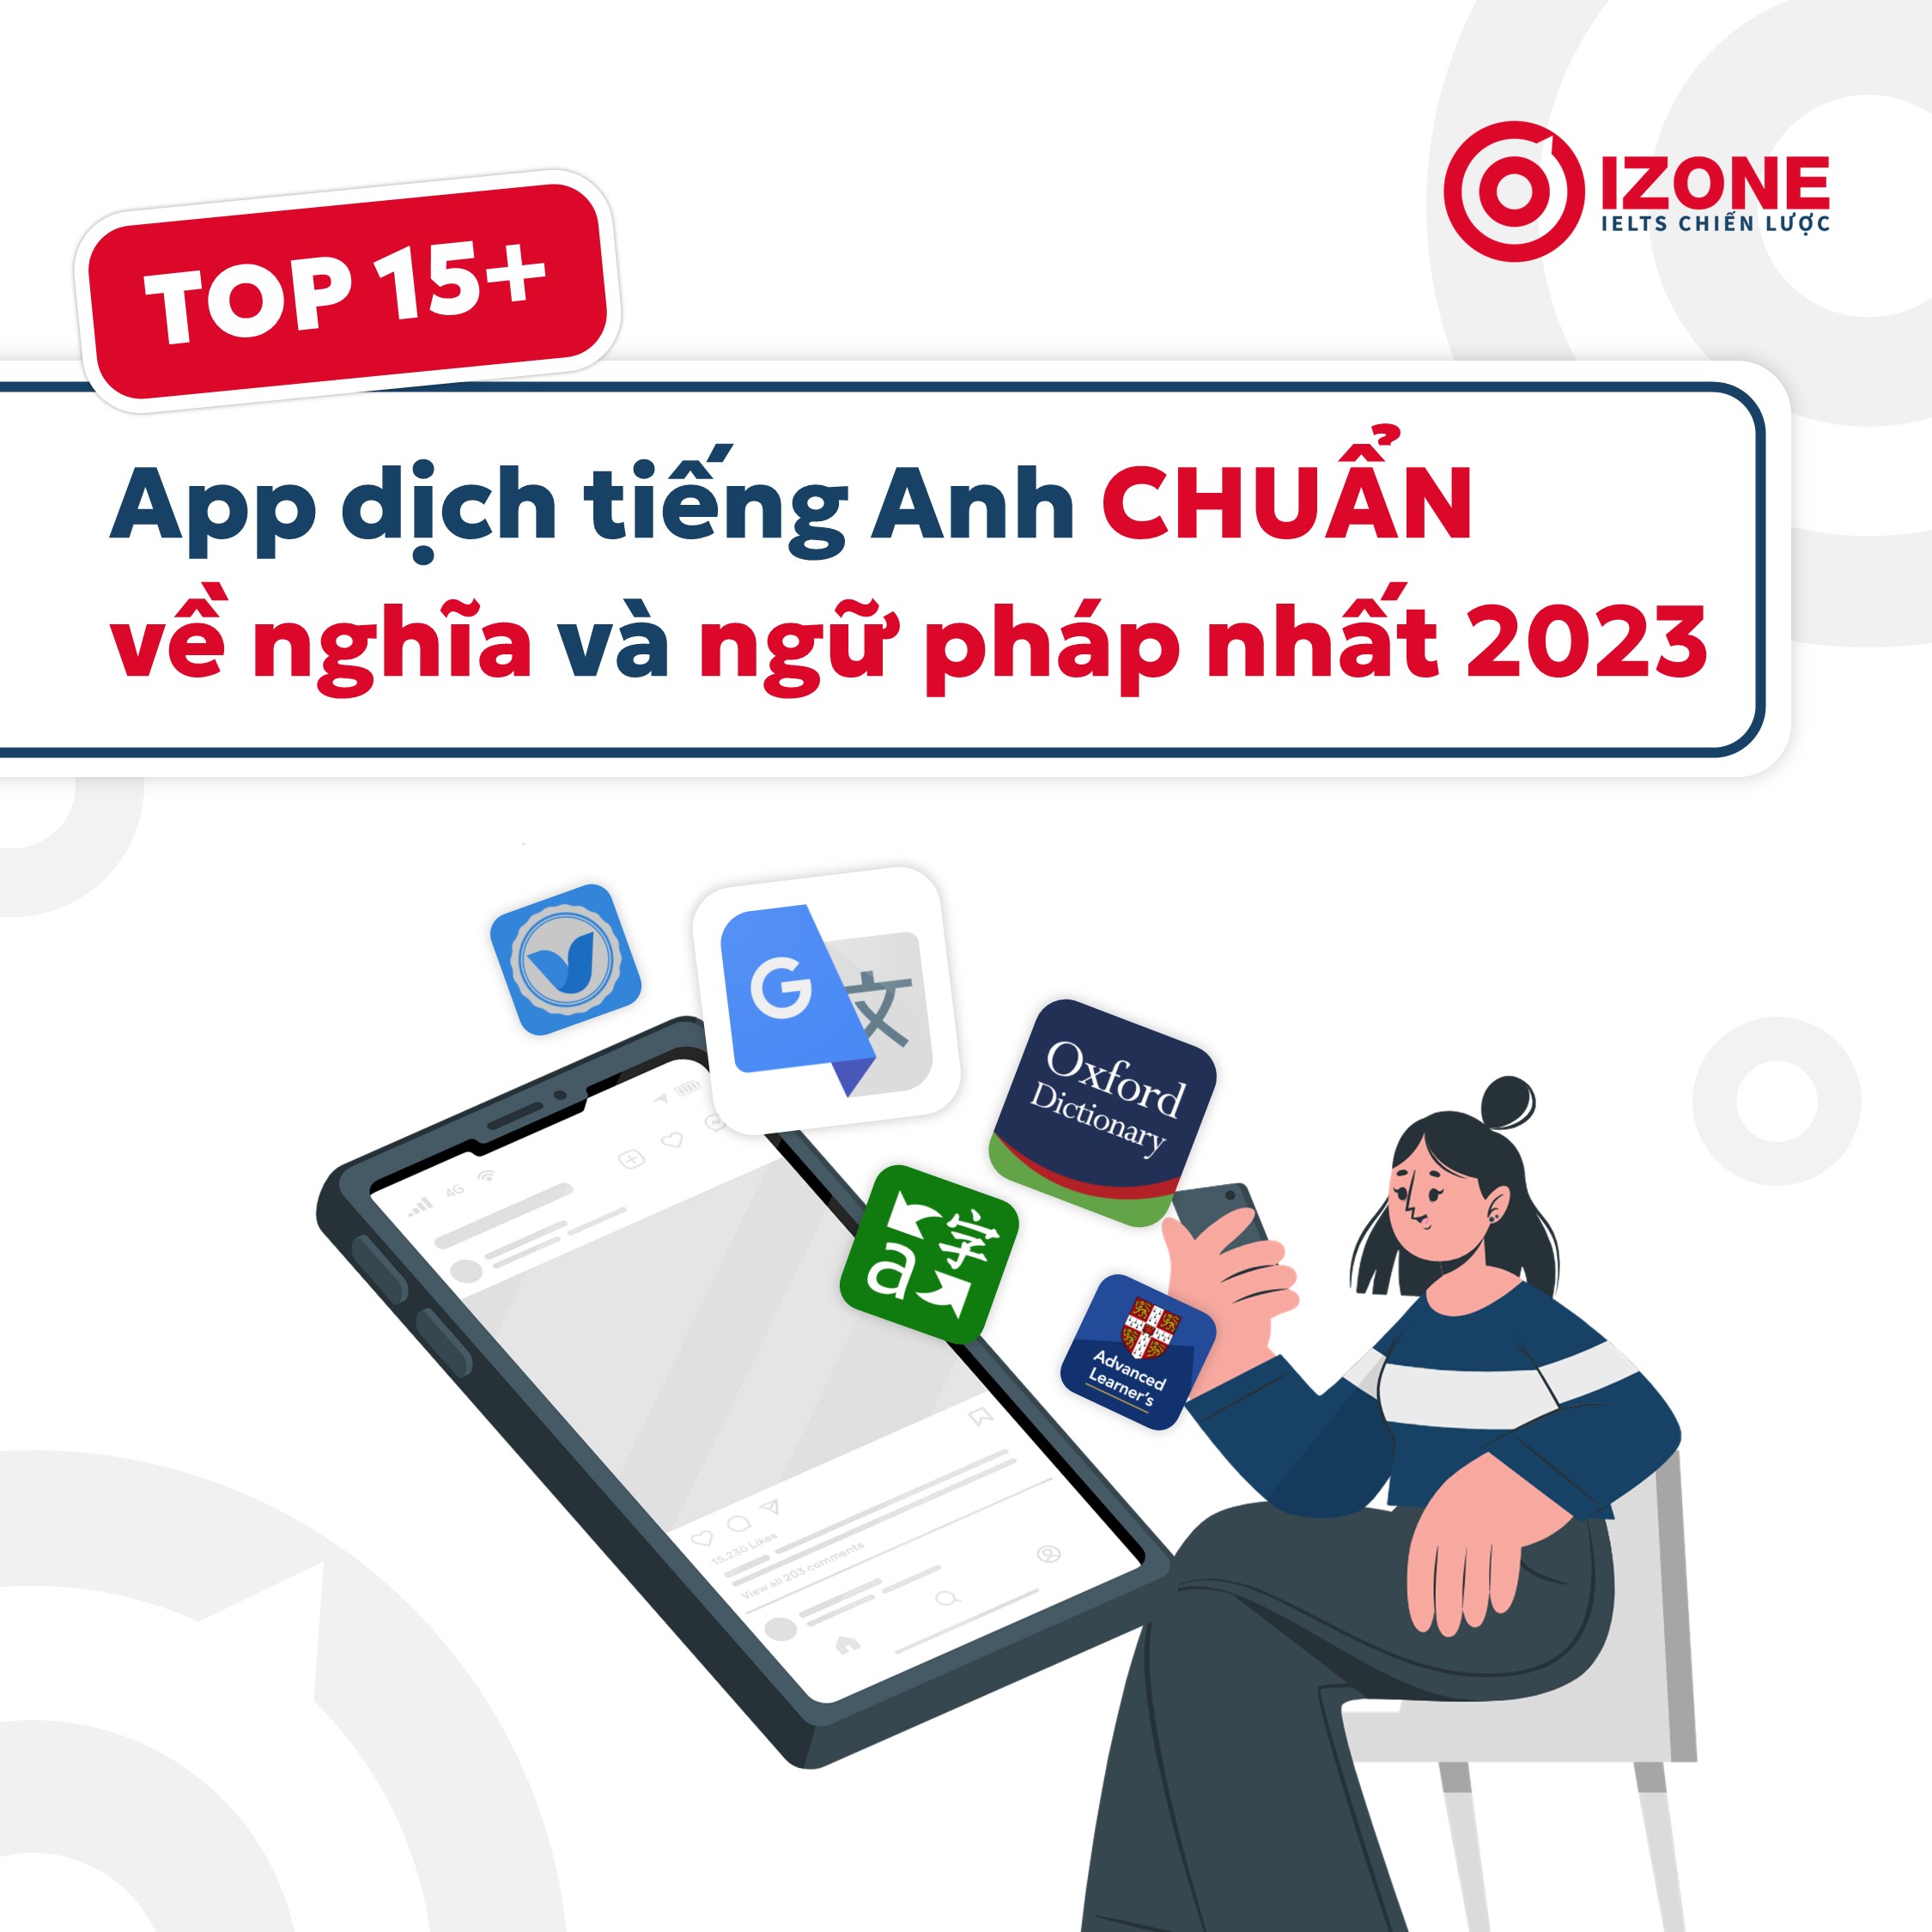 TOP 15+ app dịch tiếng Anh CHUẨN về nghĩa và ngữ pháp nhất 2023